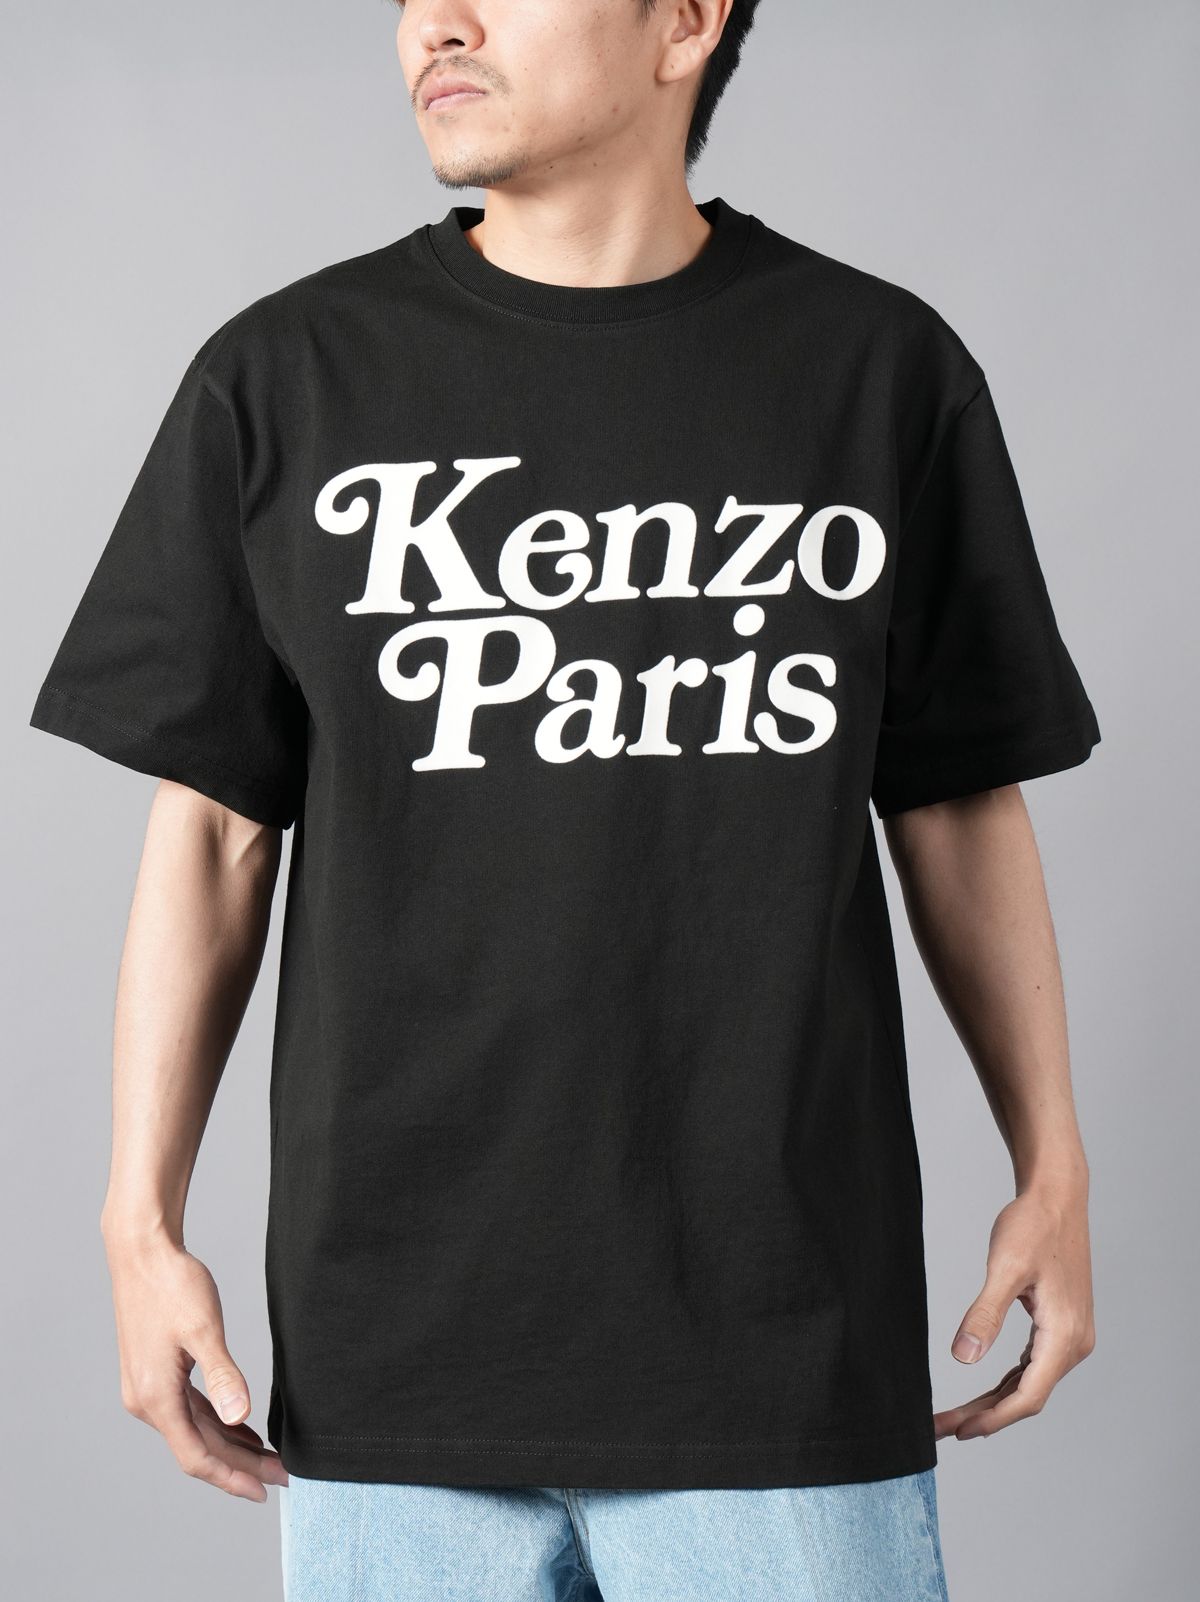 KENZO - 【再入荷】【限定】 KENZO x VERDY / KENZO BY VERDY OVERSIZE